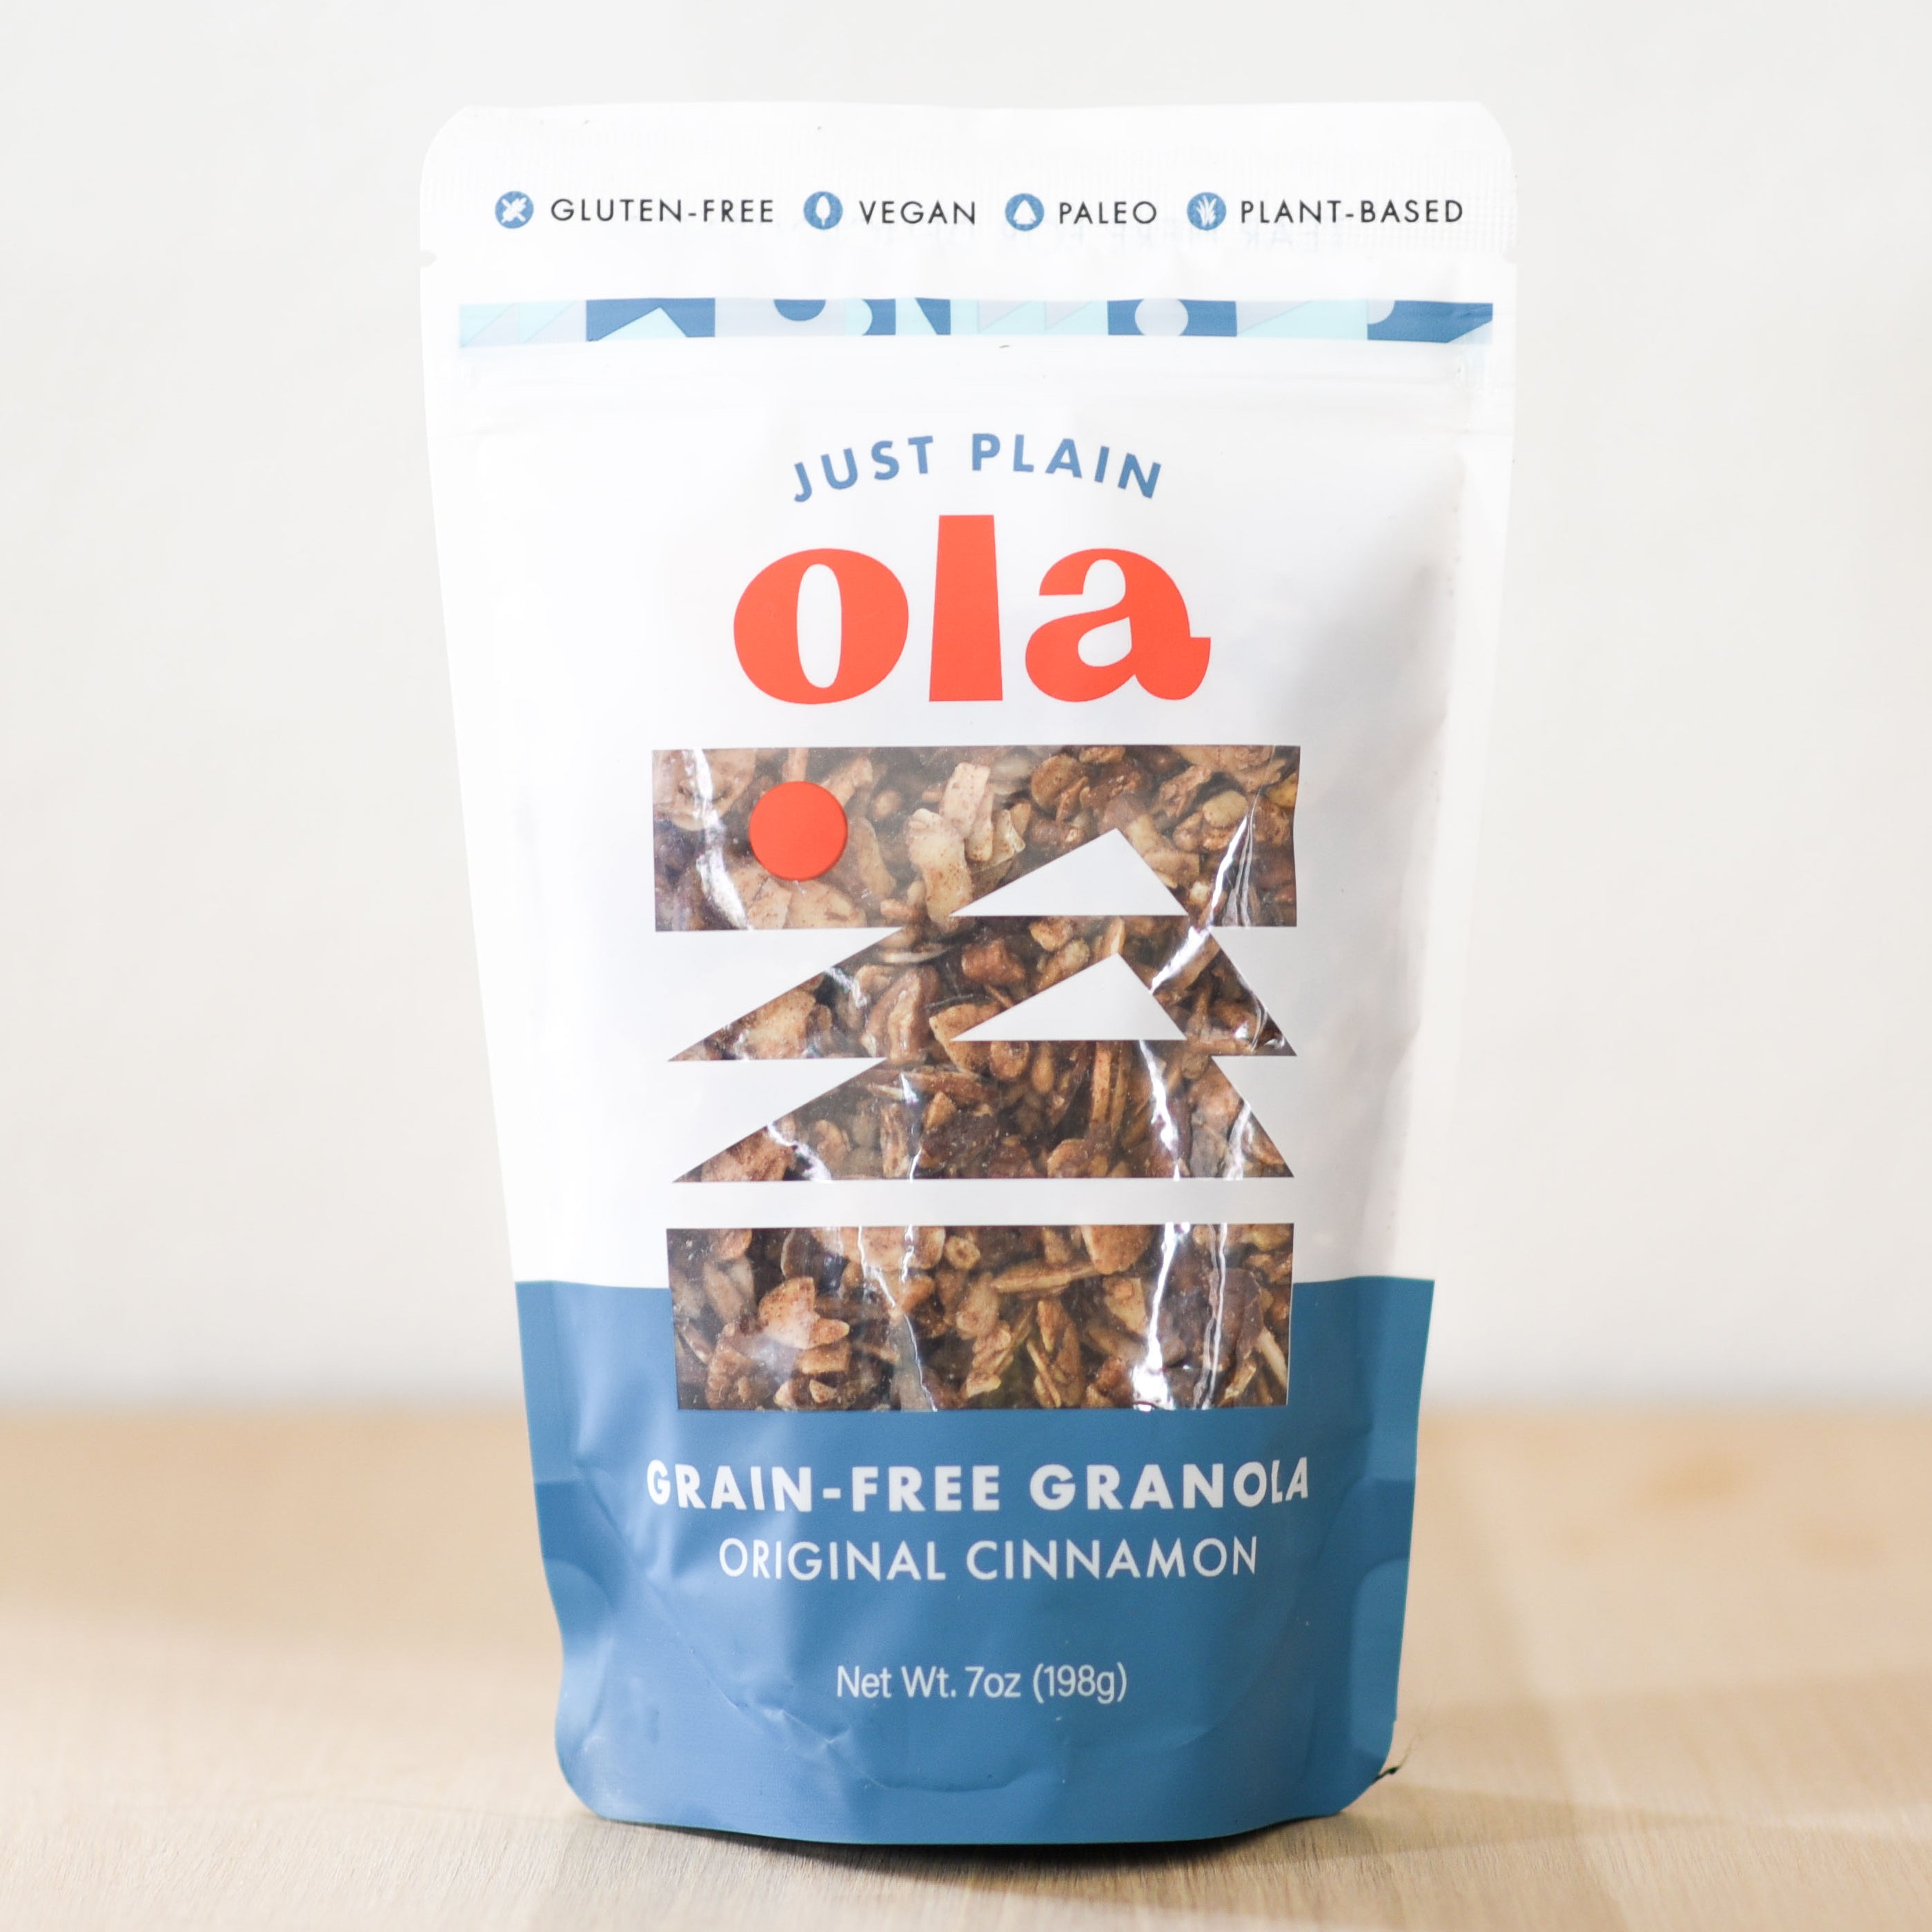 Original Cinnamon Grain-free Granola 7oz bag